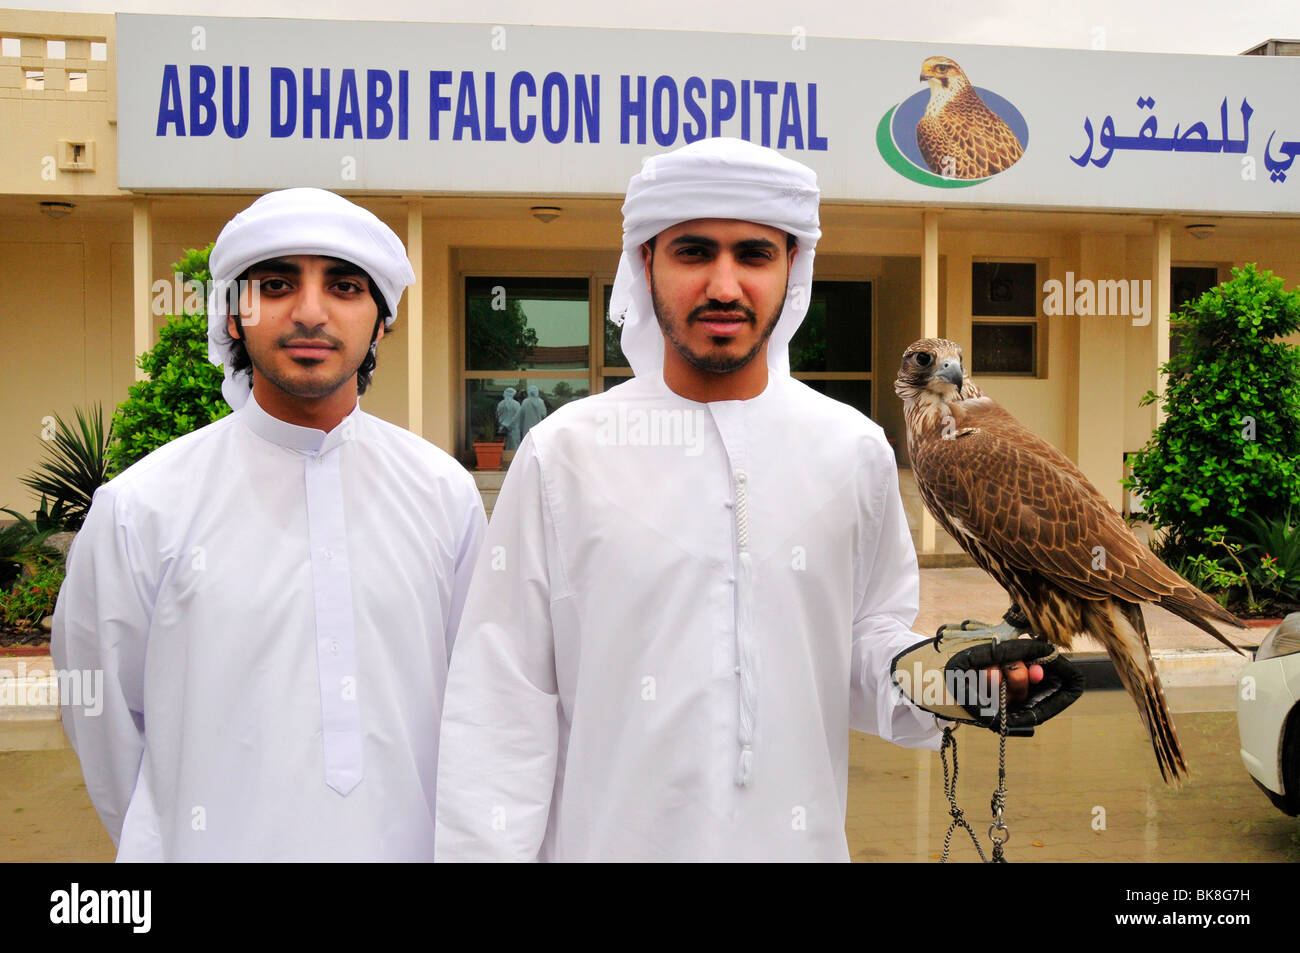 Deux sections locales avec leurs pèlerins à l'hôpital, Falcon Abu Dhabi Abu Dhabi, Émirats arabes unis, France, Moyen Orient, Orient Banque D'Images